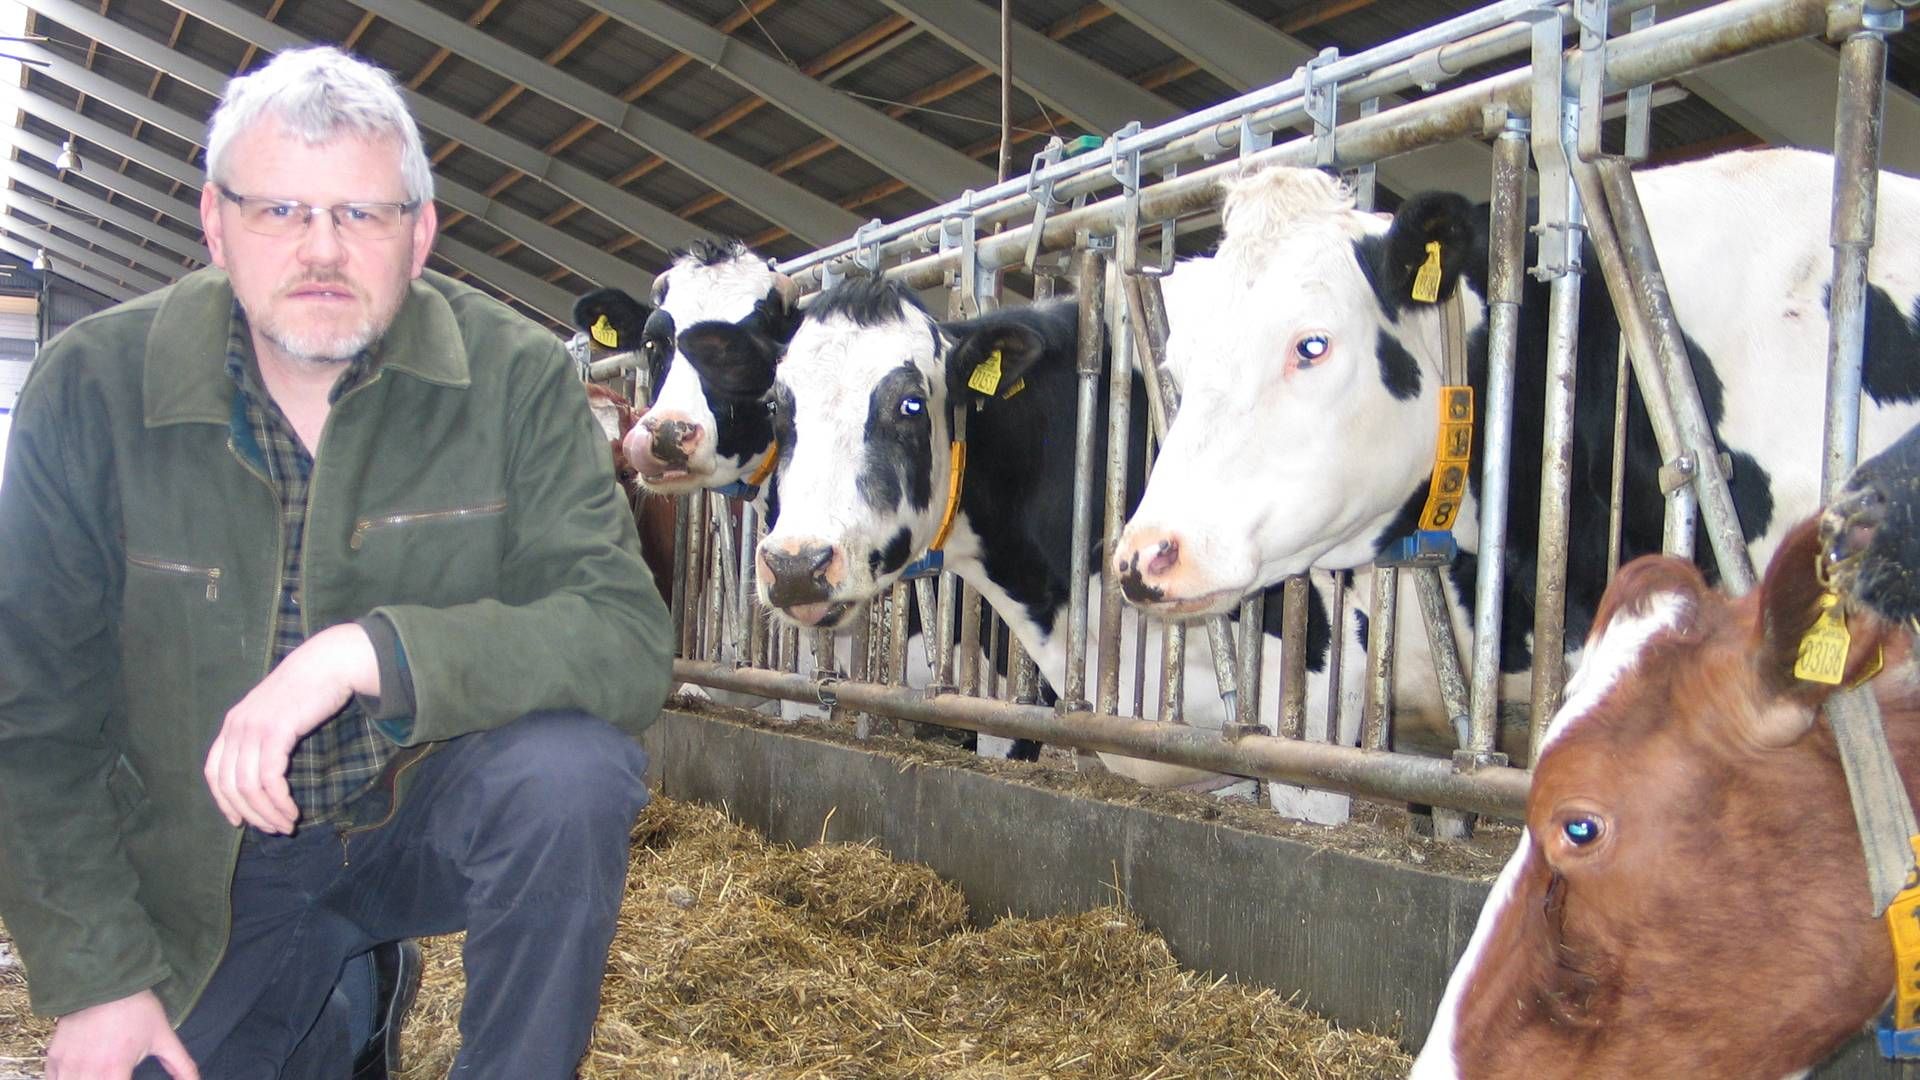 Landmænd vil fortsat være lammet i kampen om mask, fordi biogasselskaberne kan overbyde prisen, mener formand for Danske Mælkeproducenter. | Foto: LDM / PR